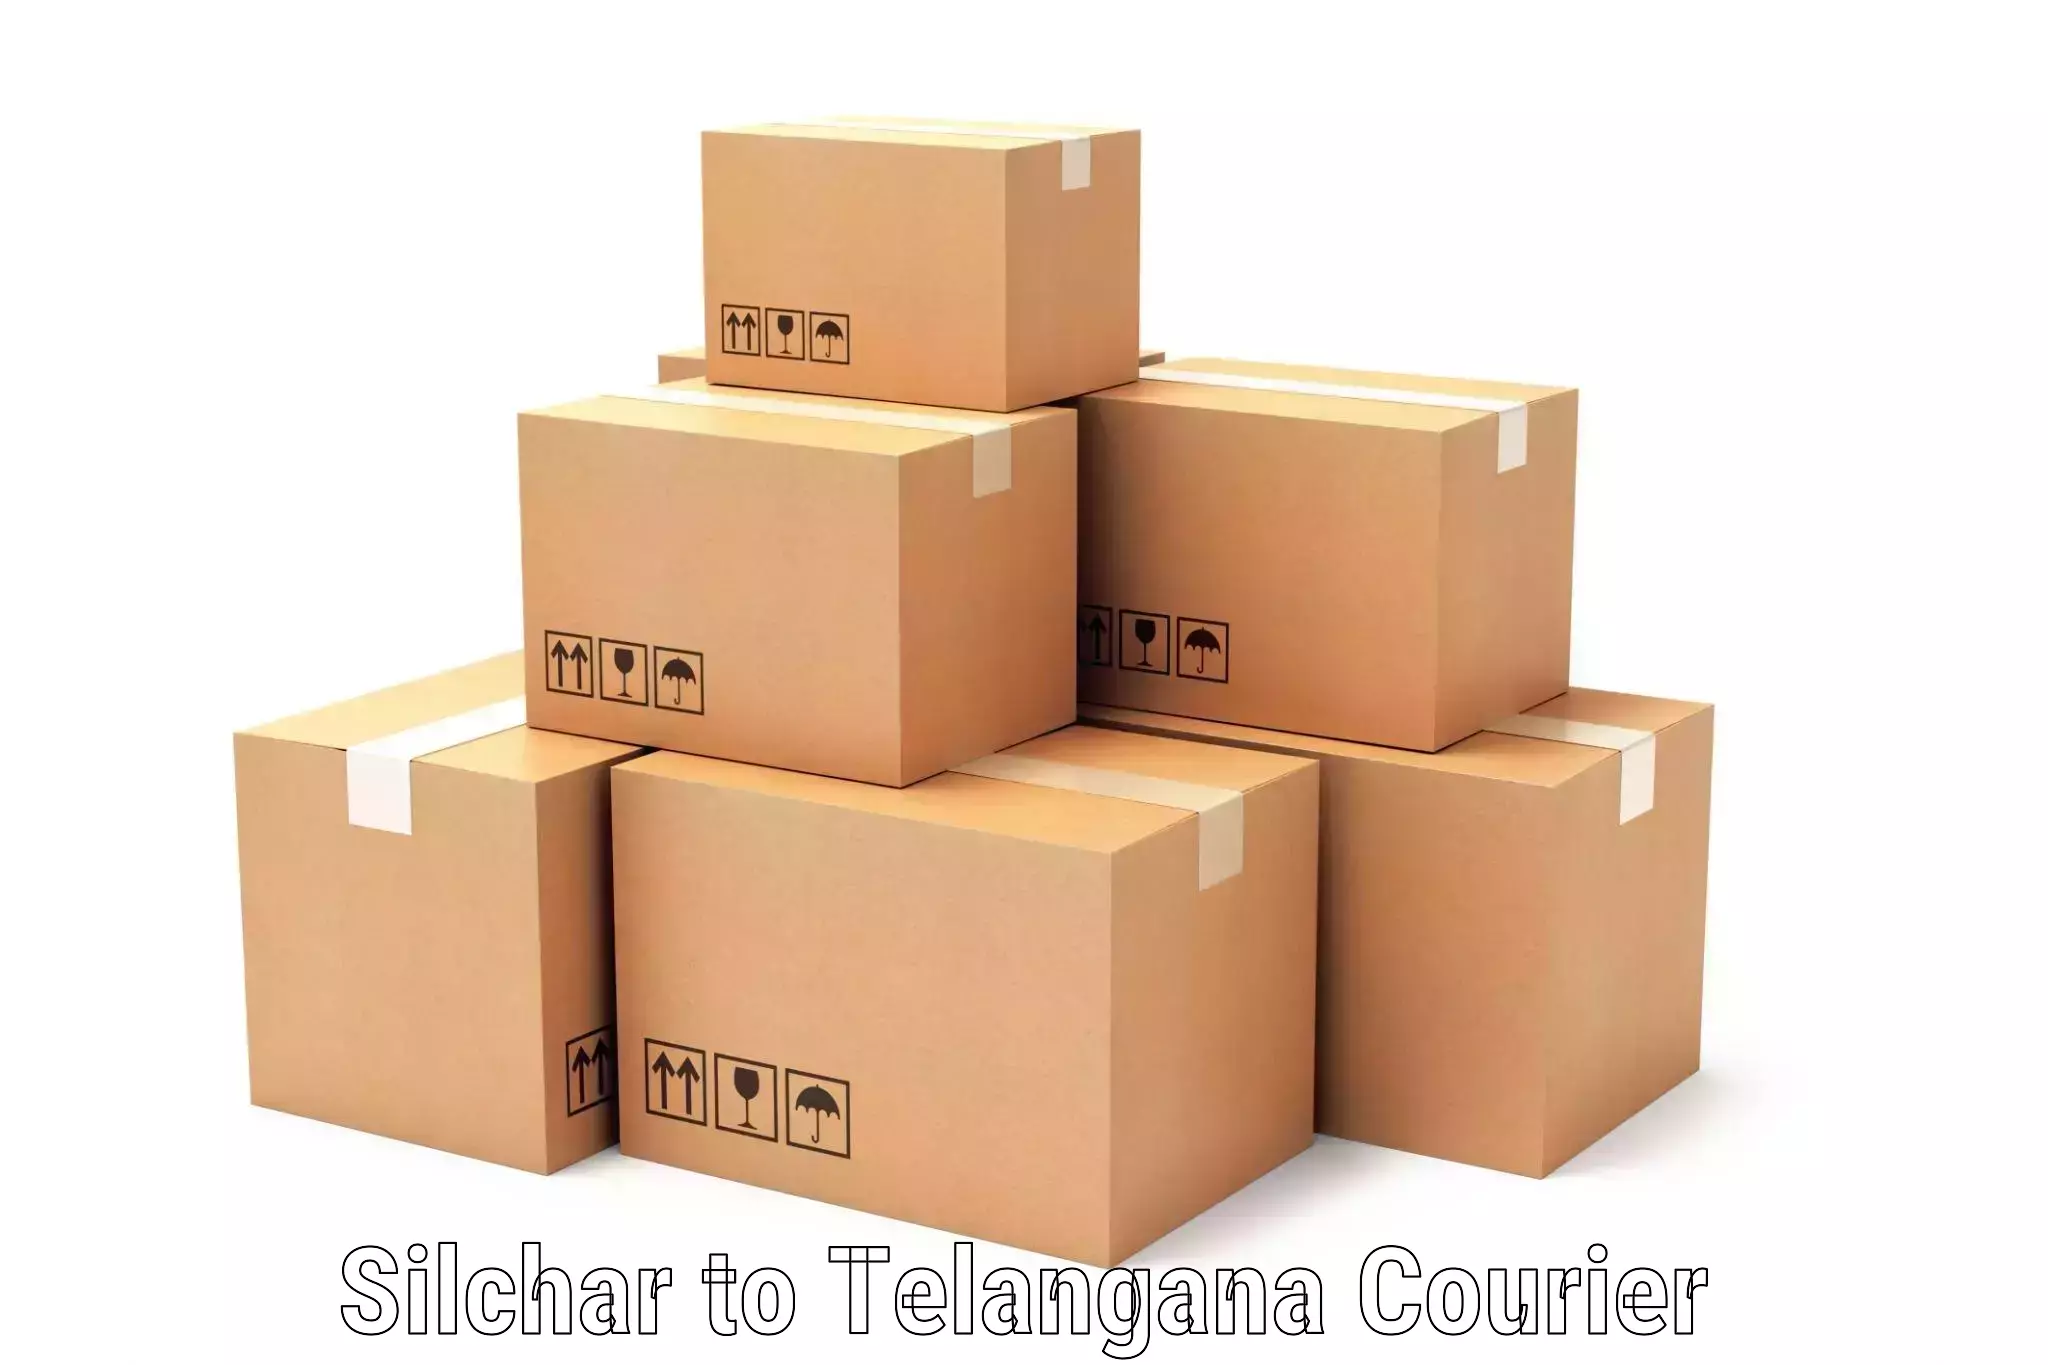 Express courier capabilities Silchar to Nalgonda